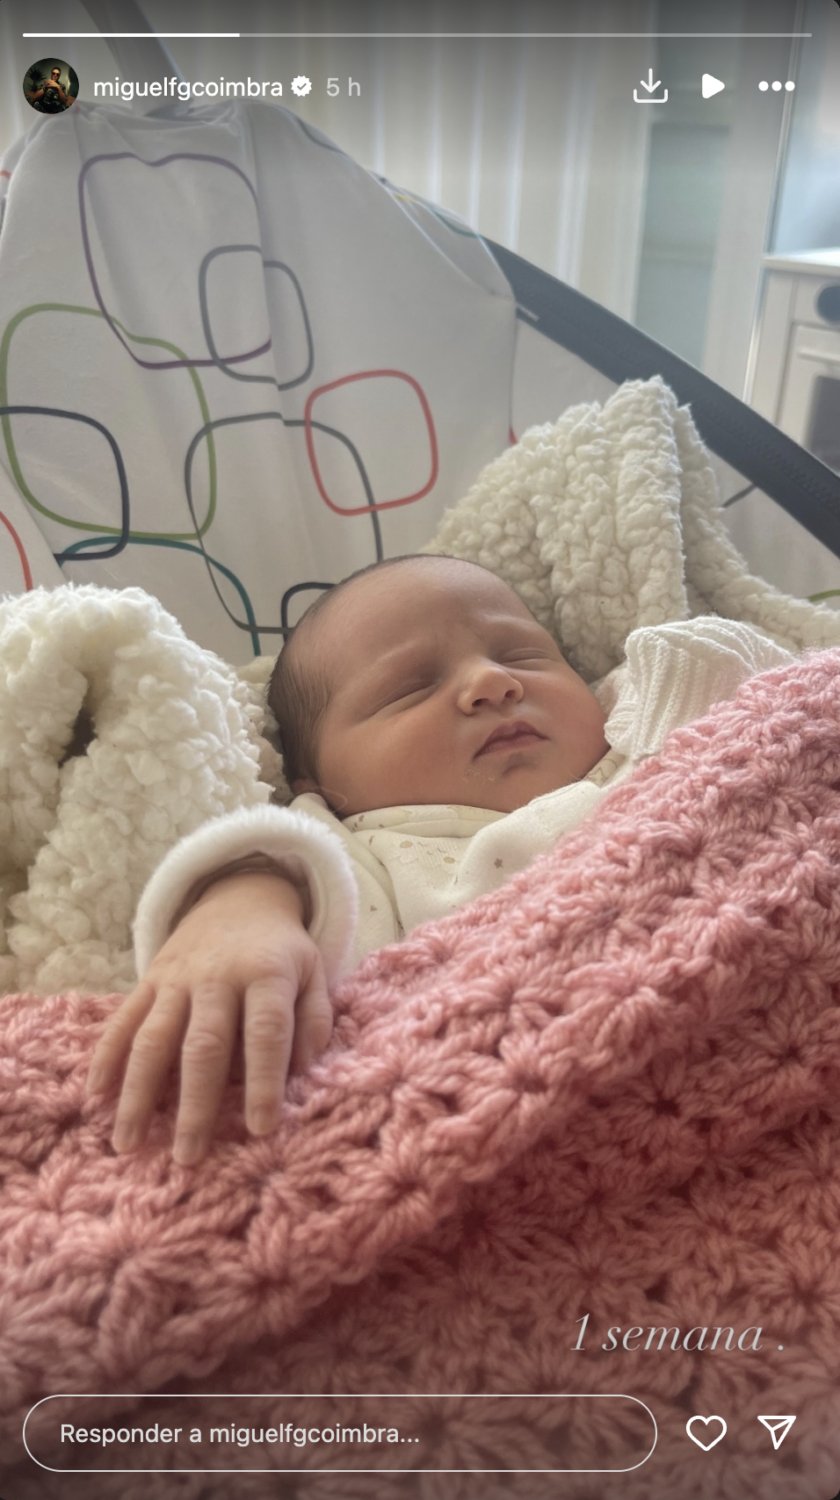 Angie Costa e Miguel Coimbra revelam novas fotos da filha bebé: &#8220;1 semana de Alice&#8221;